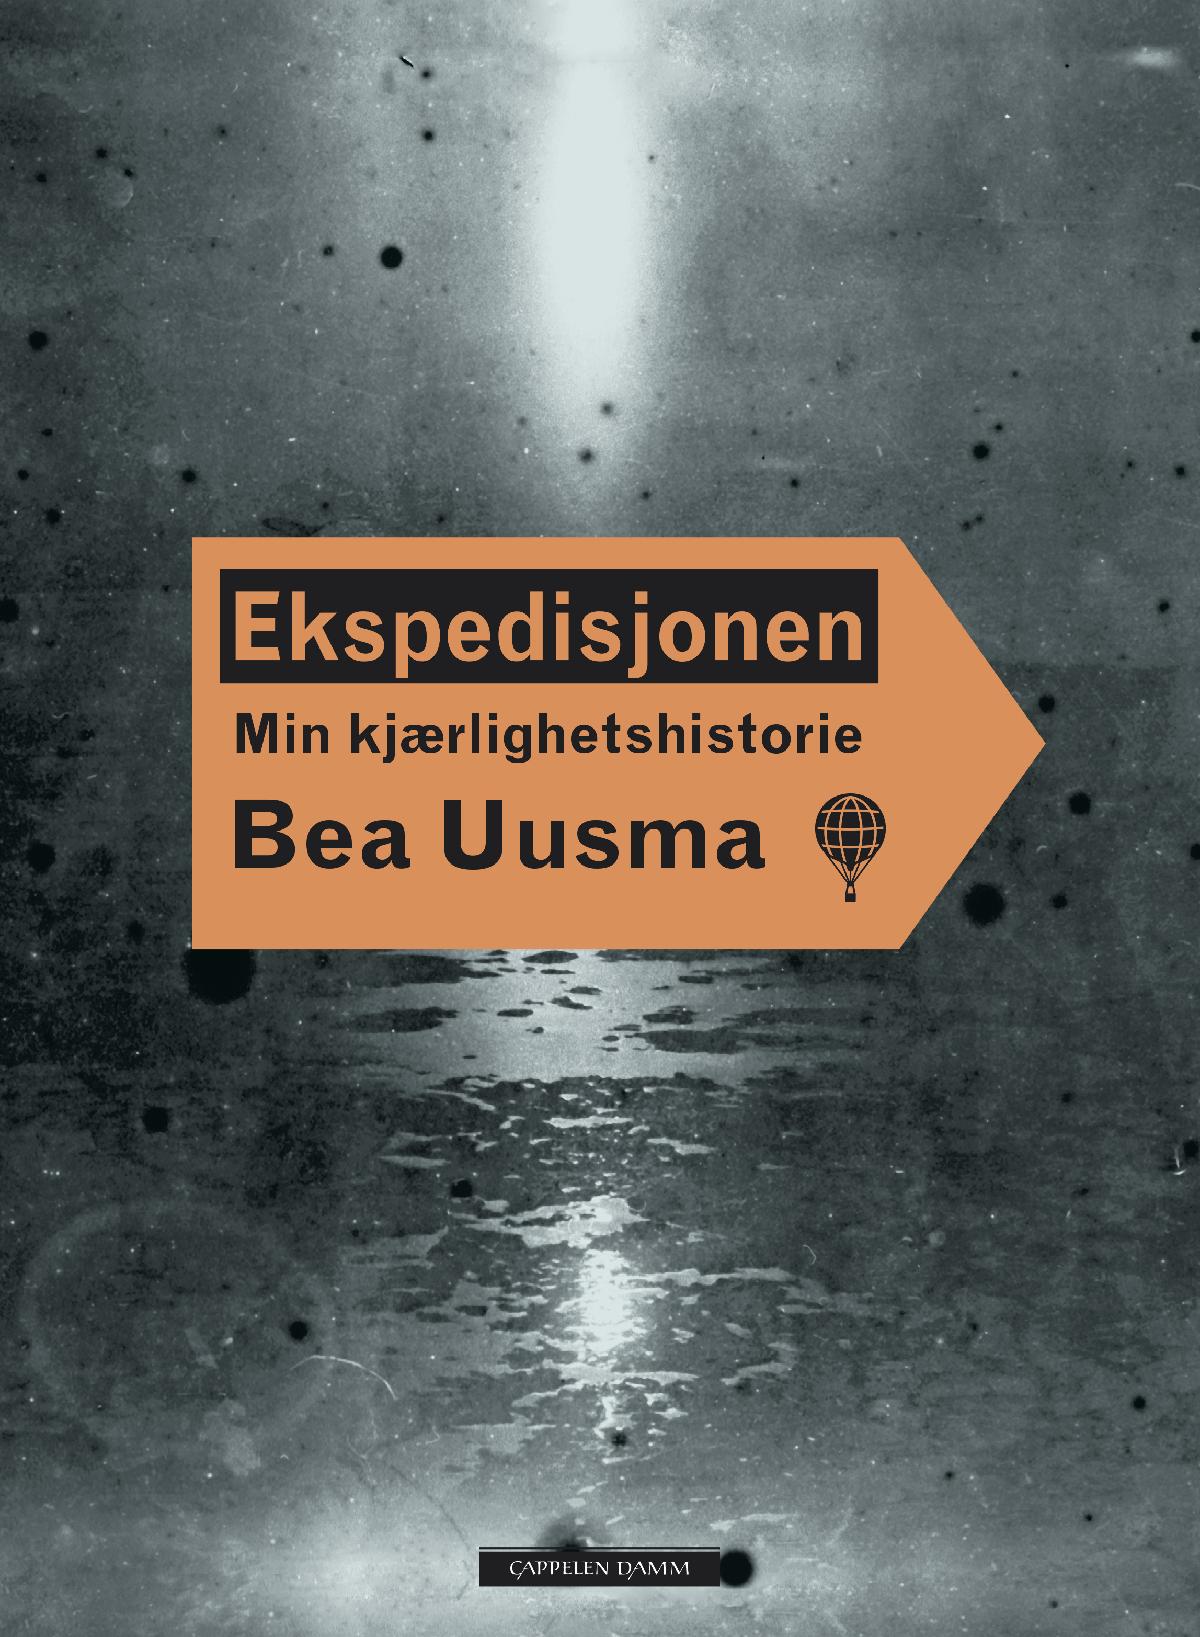 Bokomslag: Ekspedisjonen. En kjærlighetshistorie, av Bea Uusuma